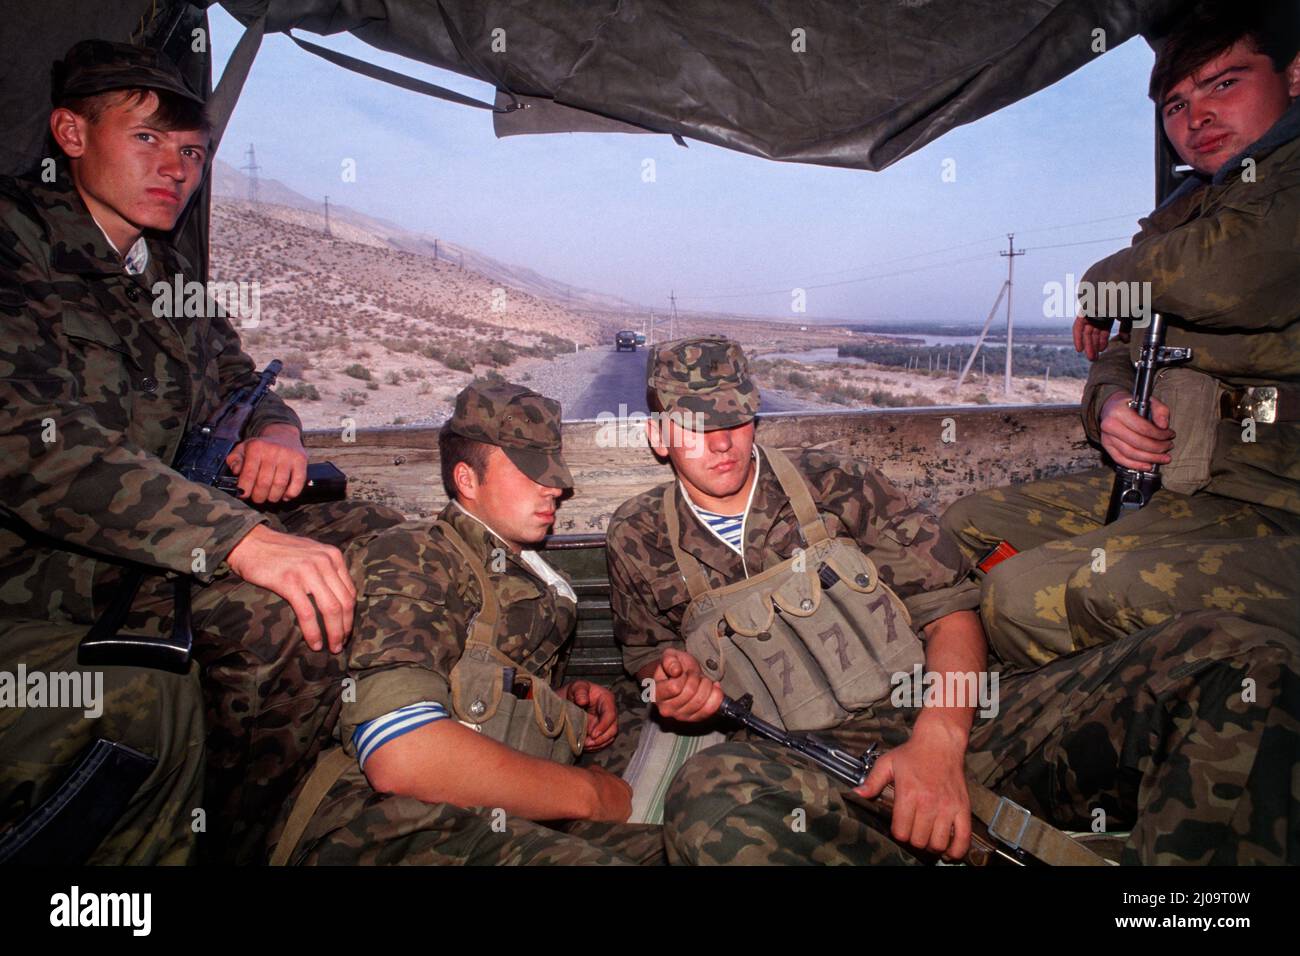 Bürgerkrieg In Tadschikistan 1992-97, September 1992. Junge russische Soldaten fahren im Rahmen eines russischen Konvois von Duschanbe (tadschikische Hauptstadt) in die südliche region khatlon an der afghanischen Grenze auf dem Rücken eines Militärfahrzeugs. Stockfoto